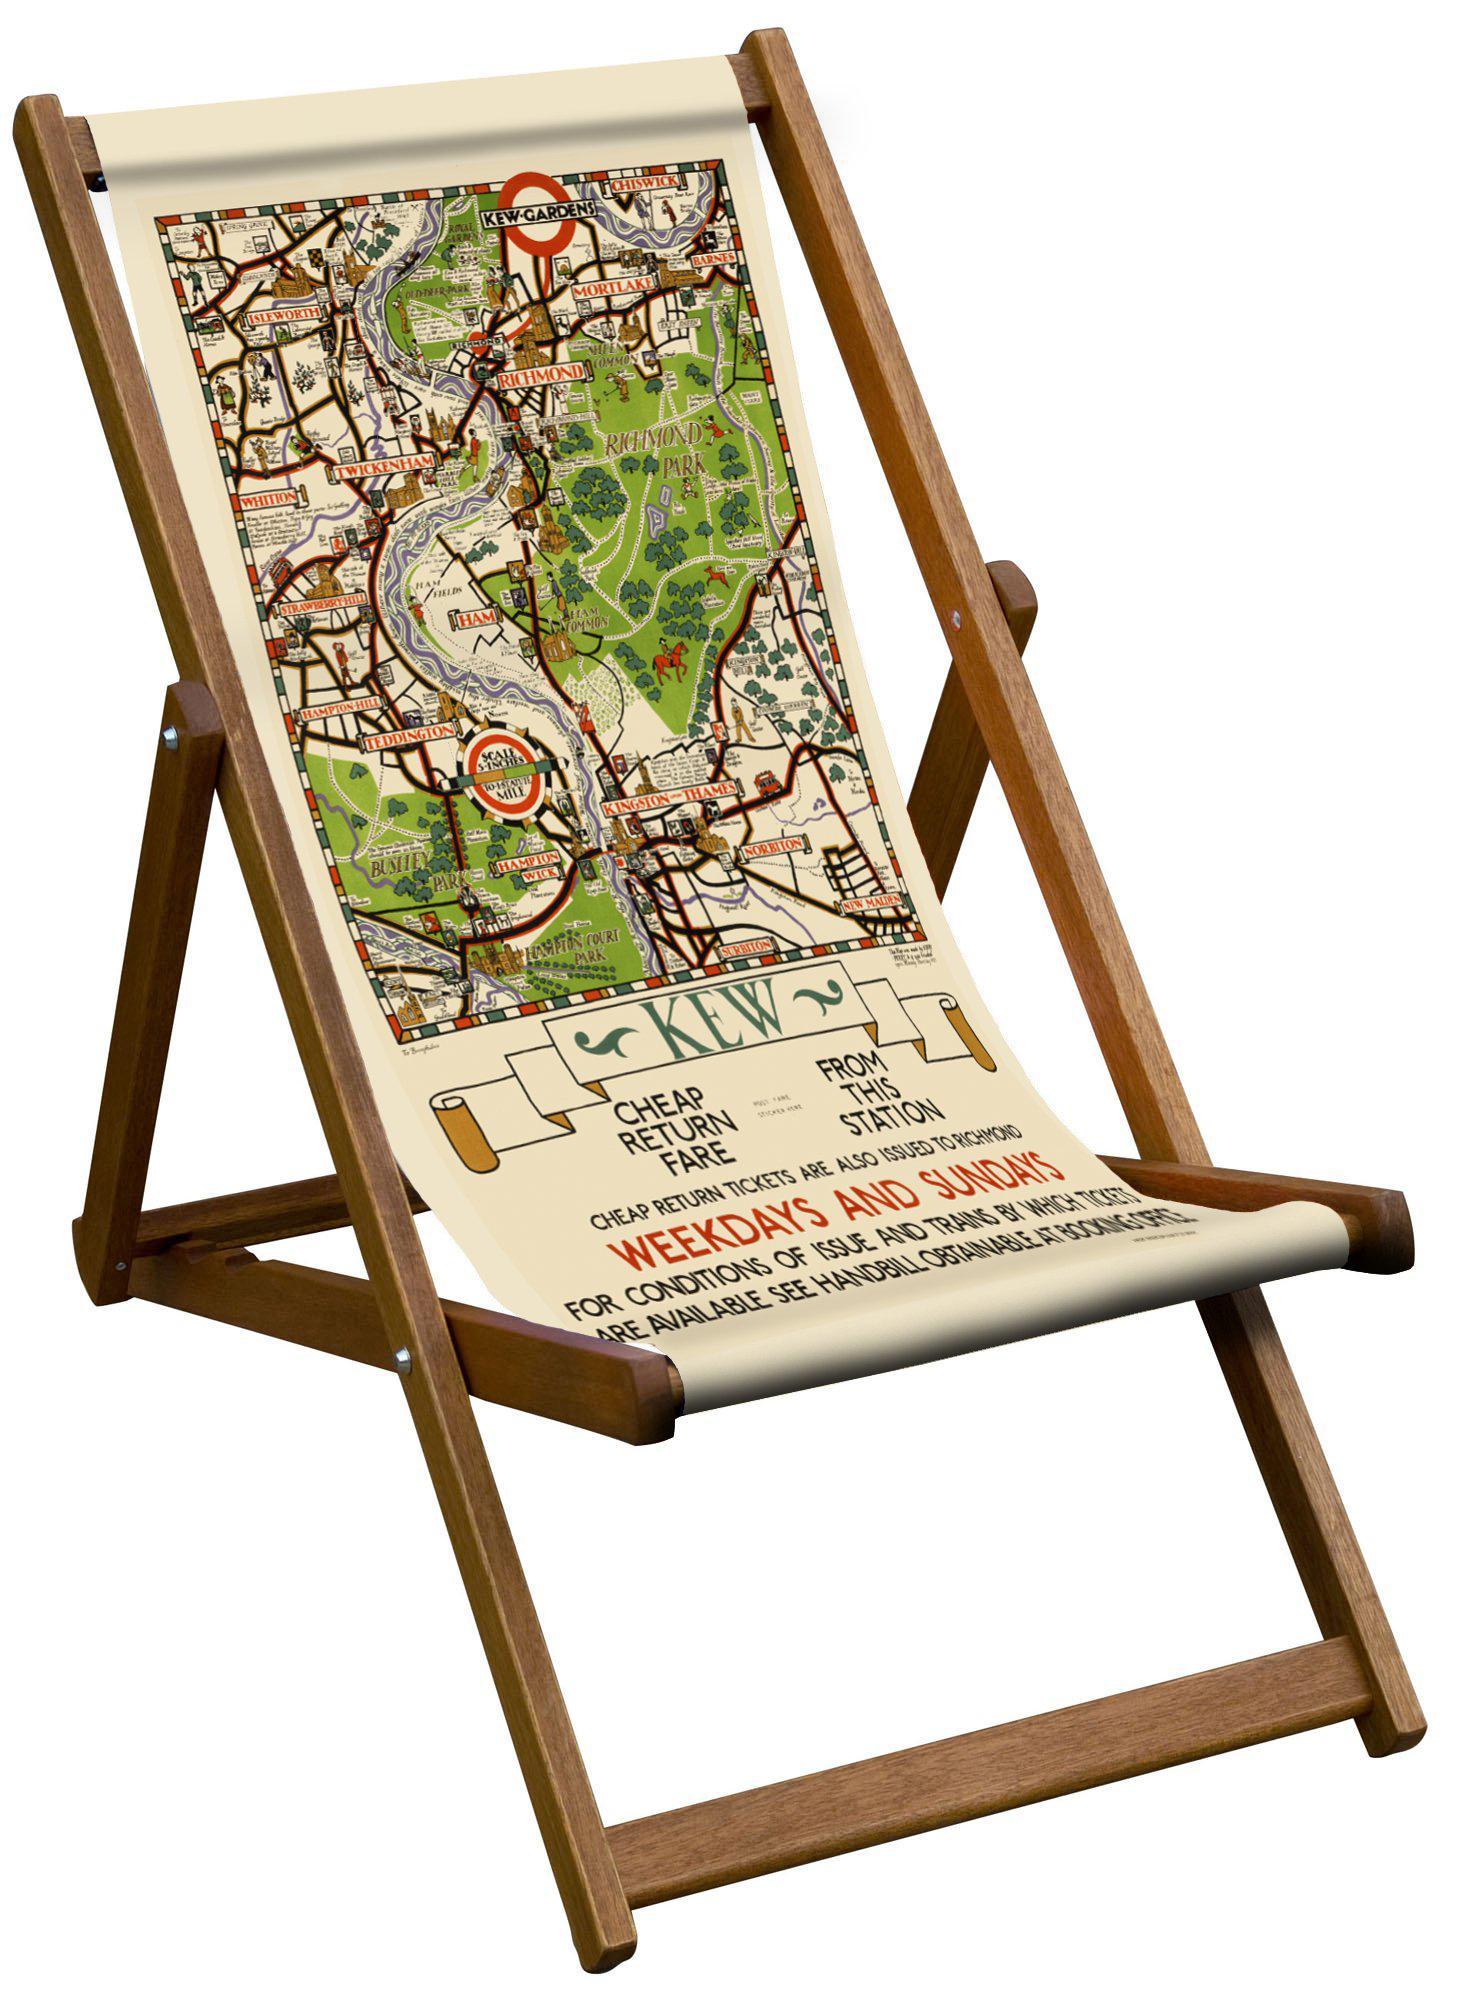 Kew Gardens Map - London Transport Deckchair